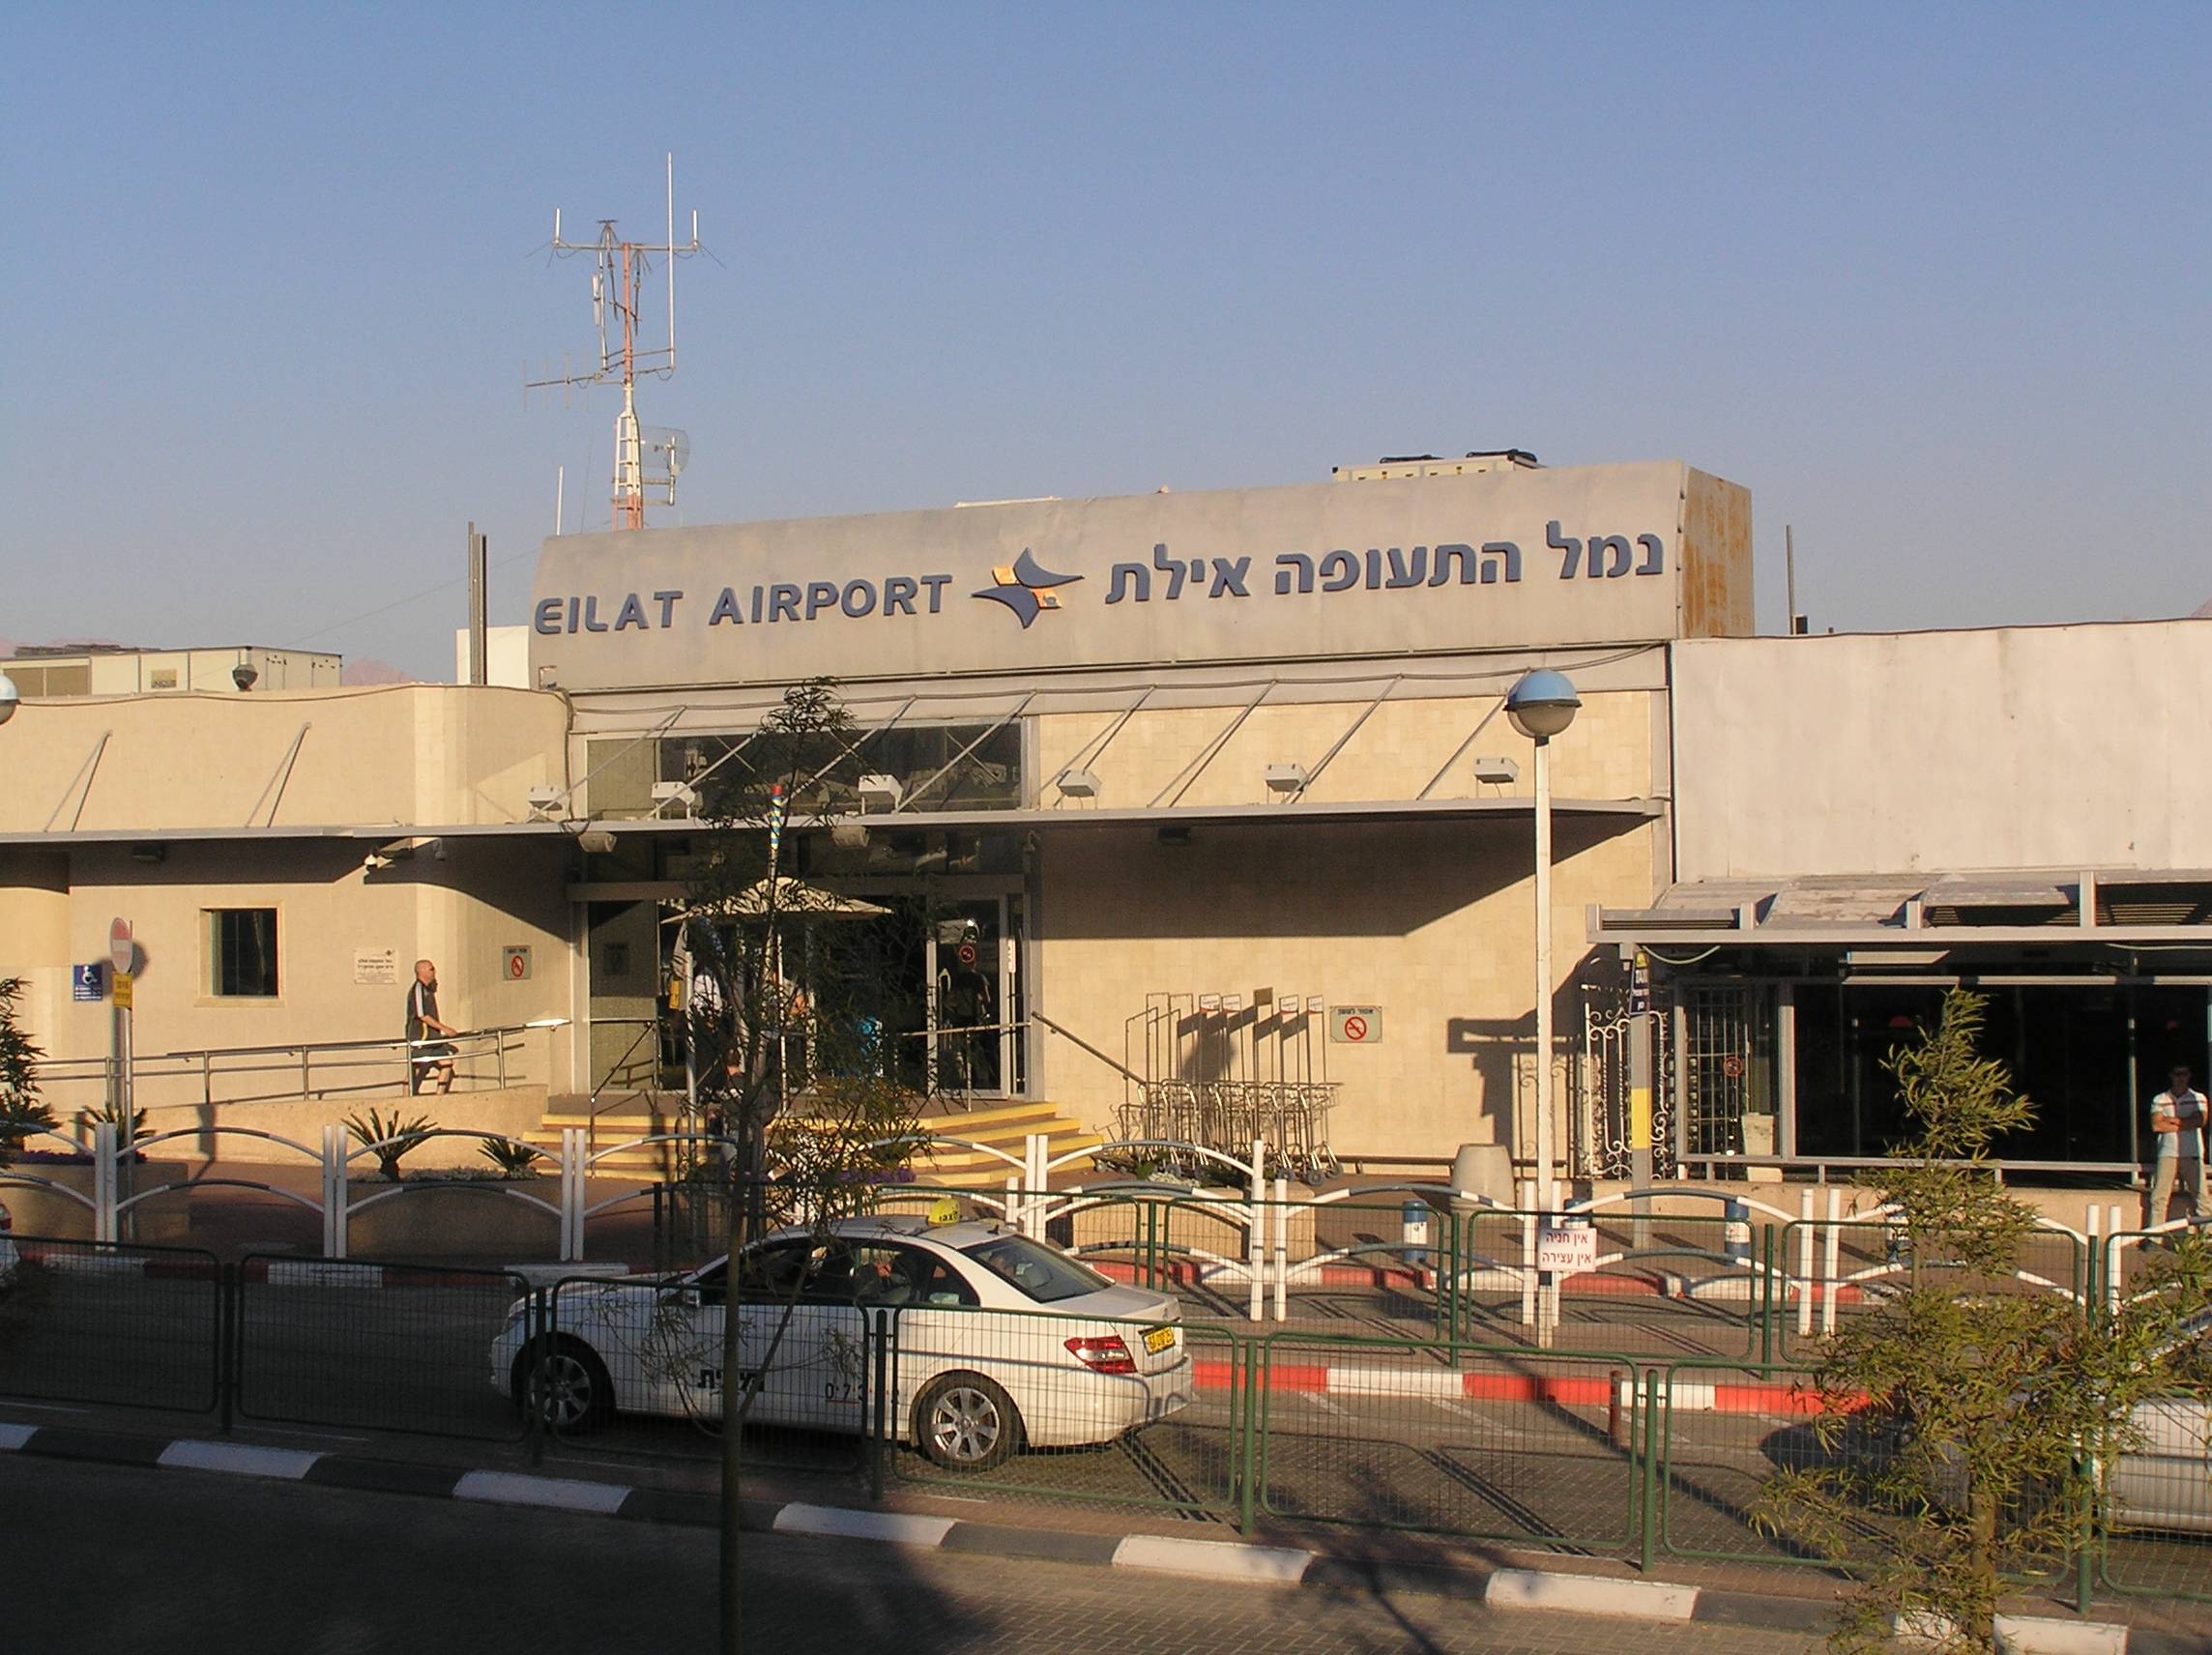 Аэропорт эйлат eth израиль